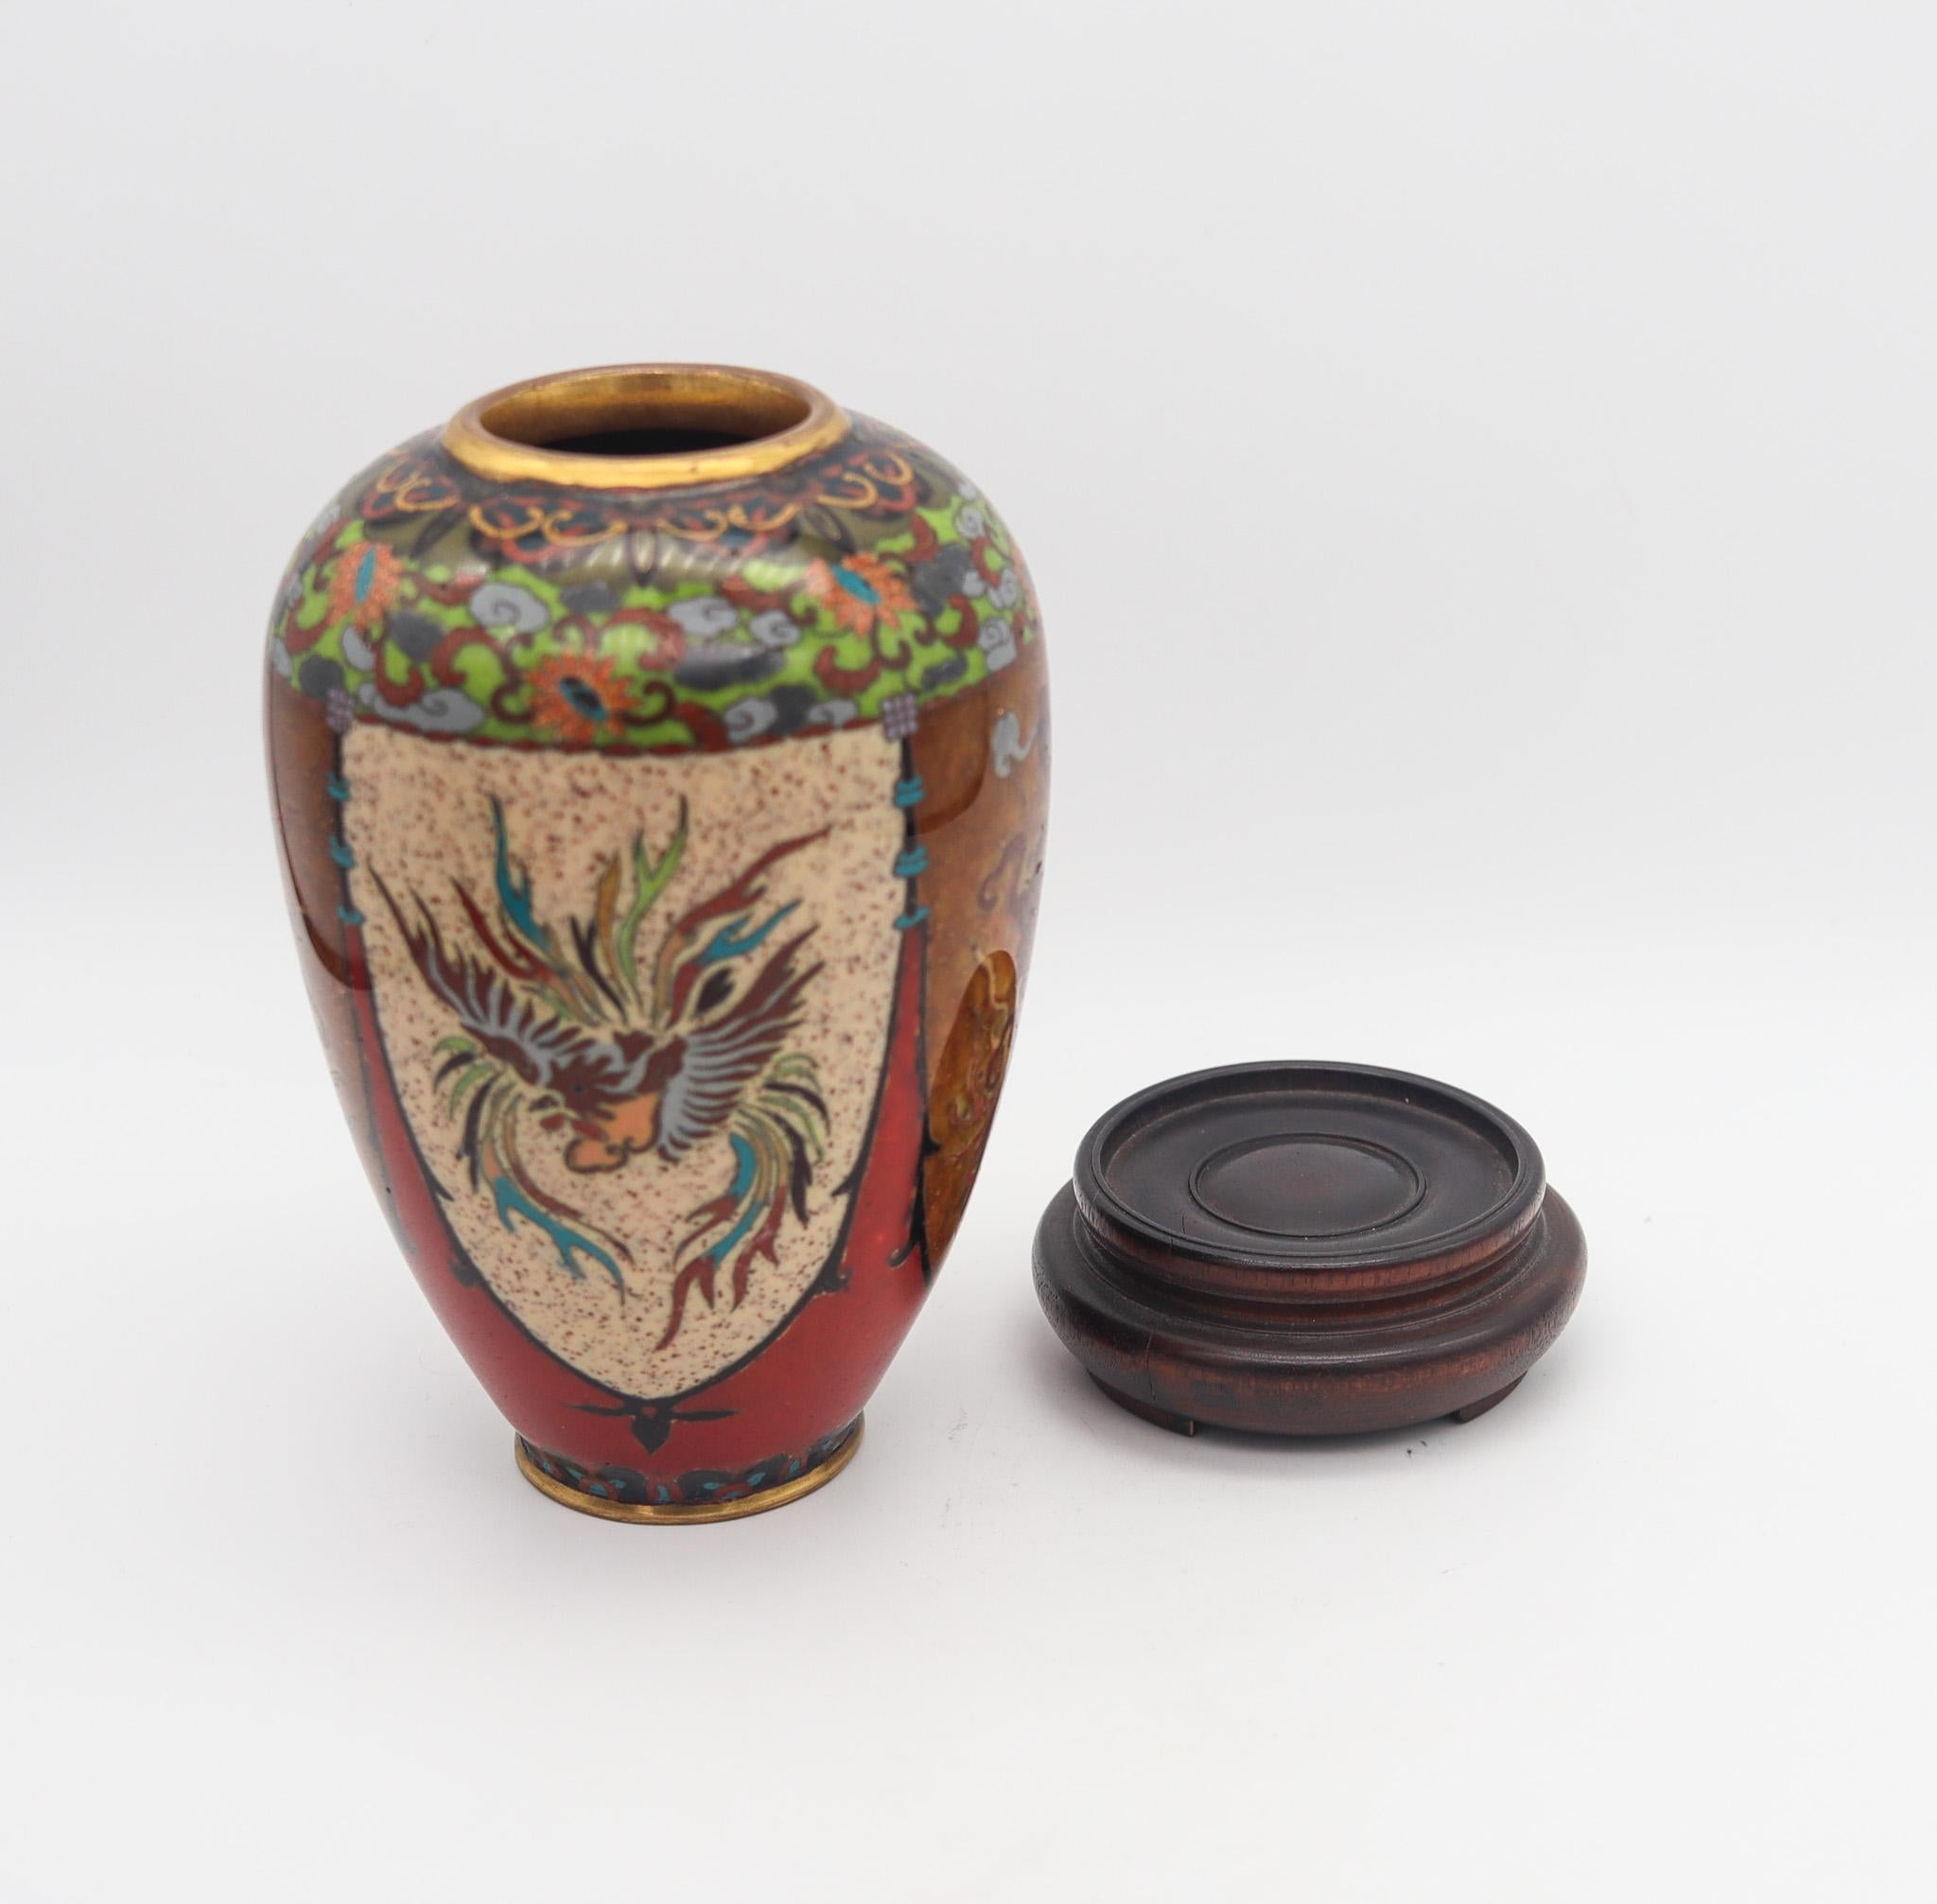 Japanische Vase aus der Meiji-Periode (1868-1912).

Schöne antike dekorative Vase, hergestellt in Japan während der Meiji-Periode (1868-1912), ca. 1890er Jahre. Sie wurde sorgfältig aus massiver Bronze mit Kupferdrähten gefertigt und mit